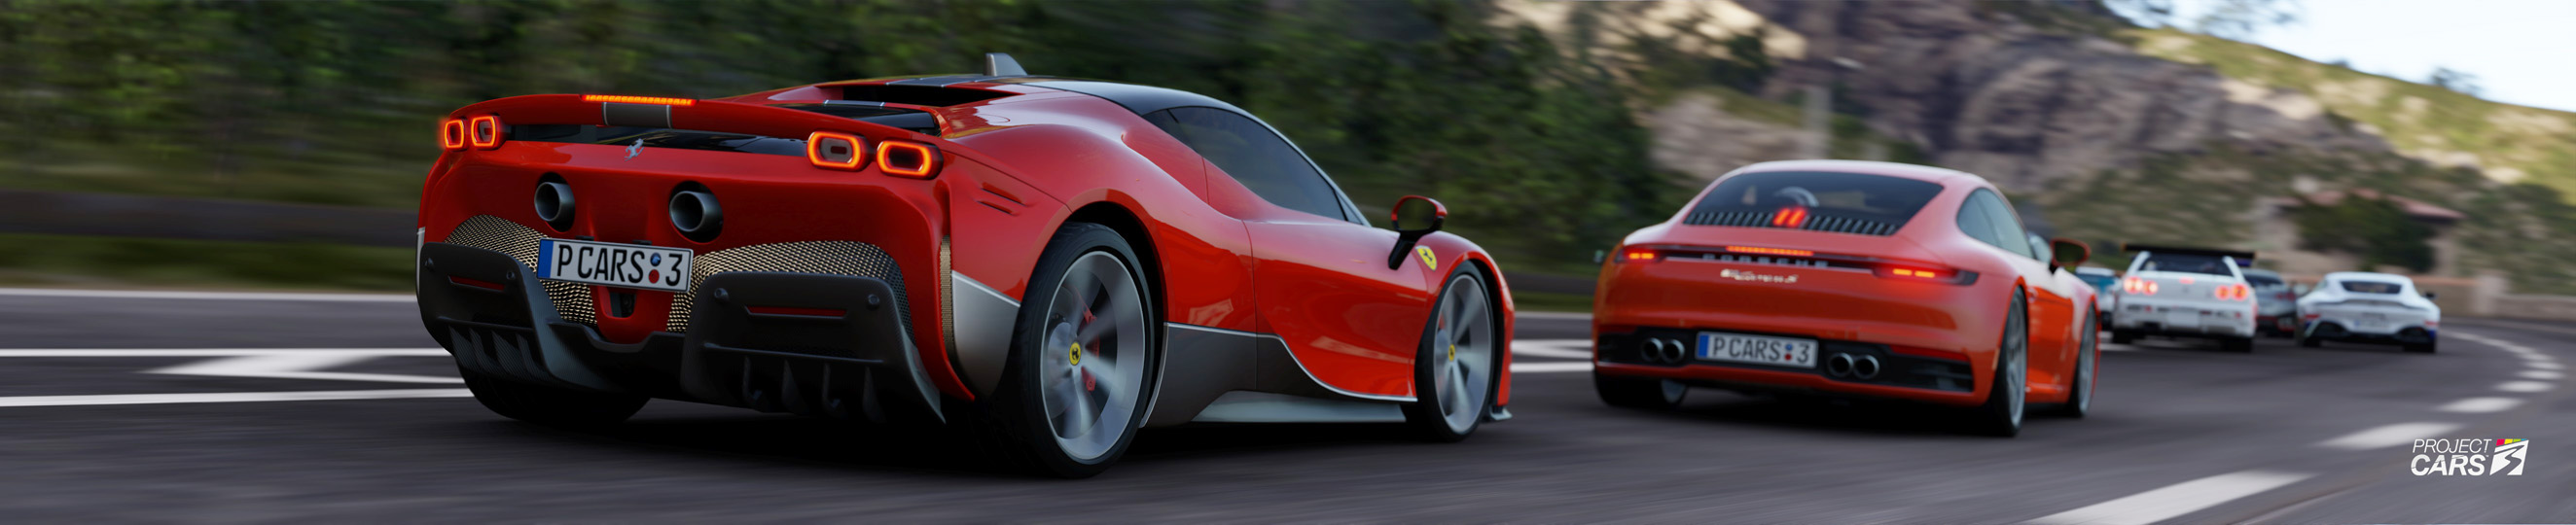 2 PROJECT CARS 3 Ferrari Lambo Henessay DLC crop copy.jpg